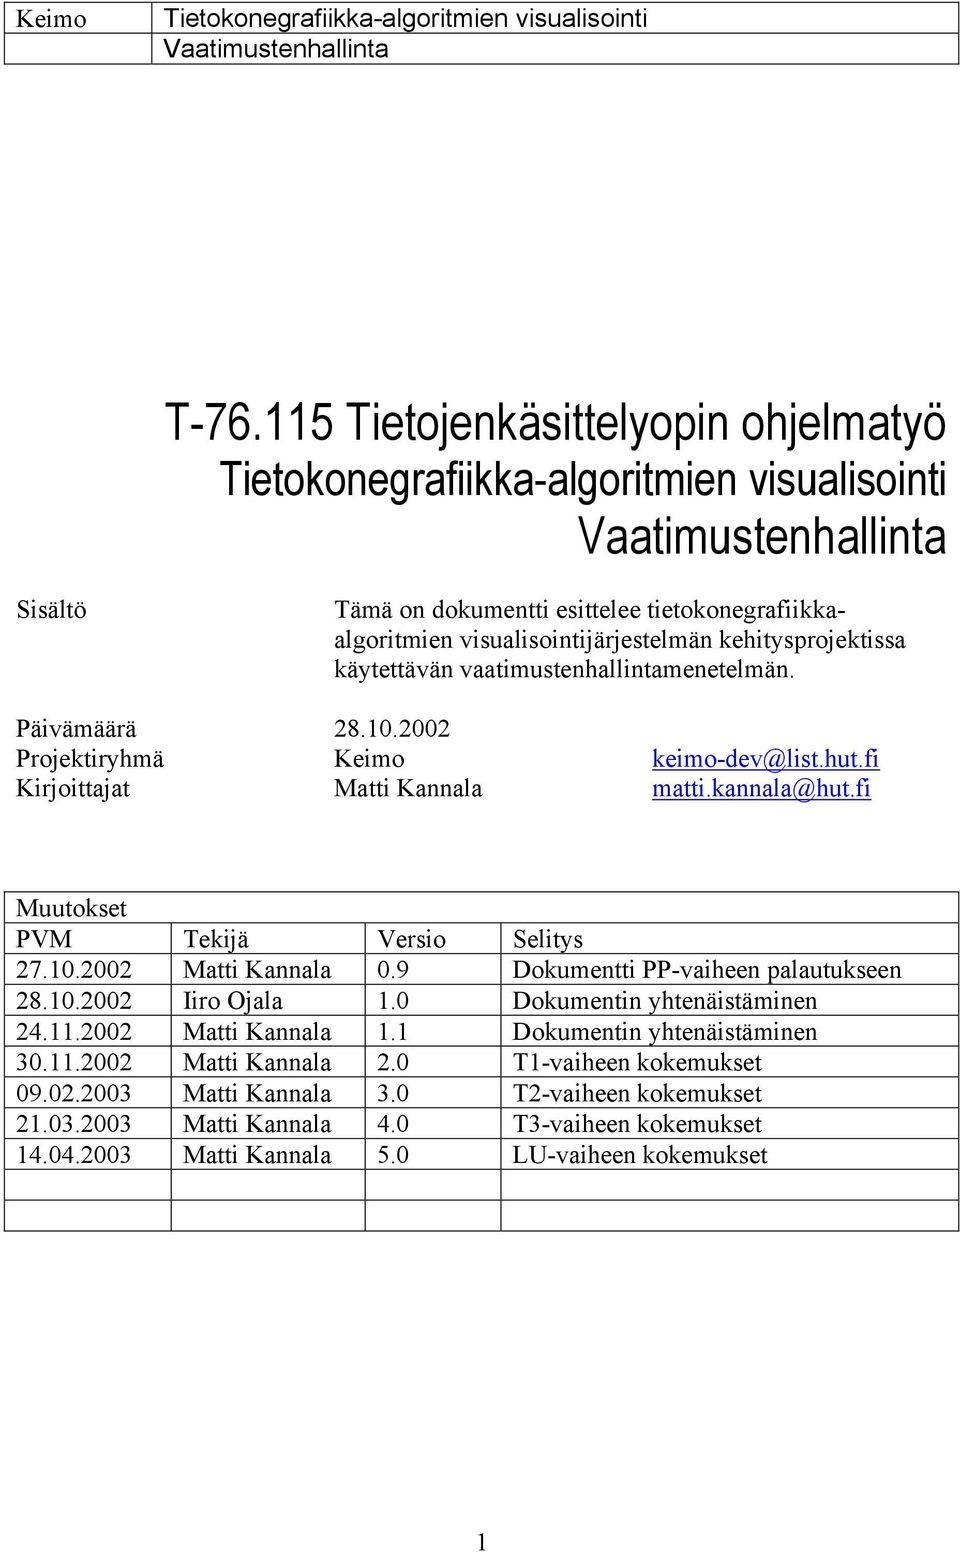 fi Muutokset PVM Tekijä Versio Selitys 27.10.2002 Matti Kannala 0.9 Dokumentti PP-vaiheen palautukseen 28.10.2002 Iiro Ojala 1.0 Dokumentin yhtenäistäminen 24.11.